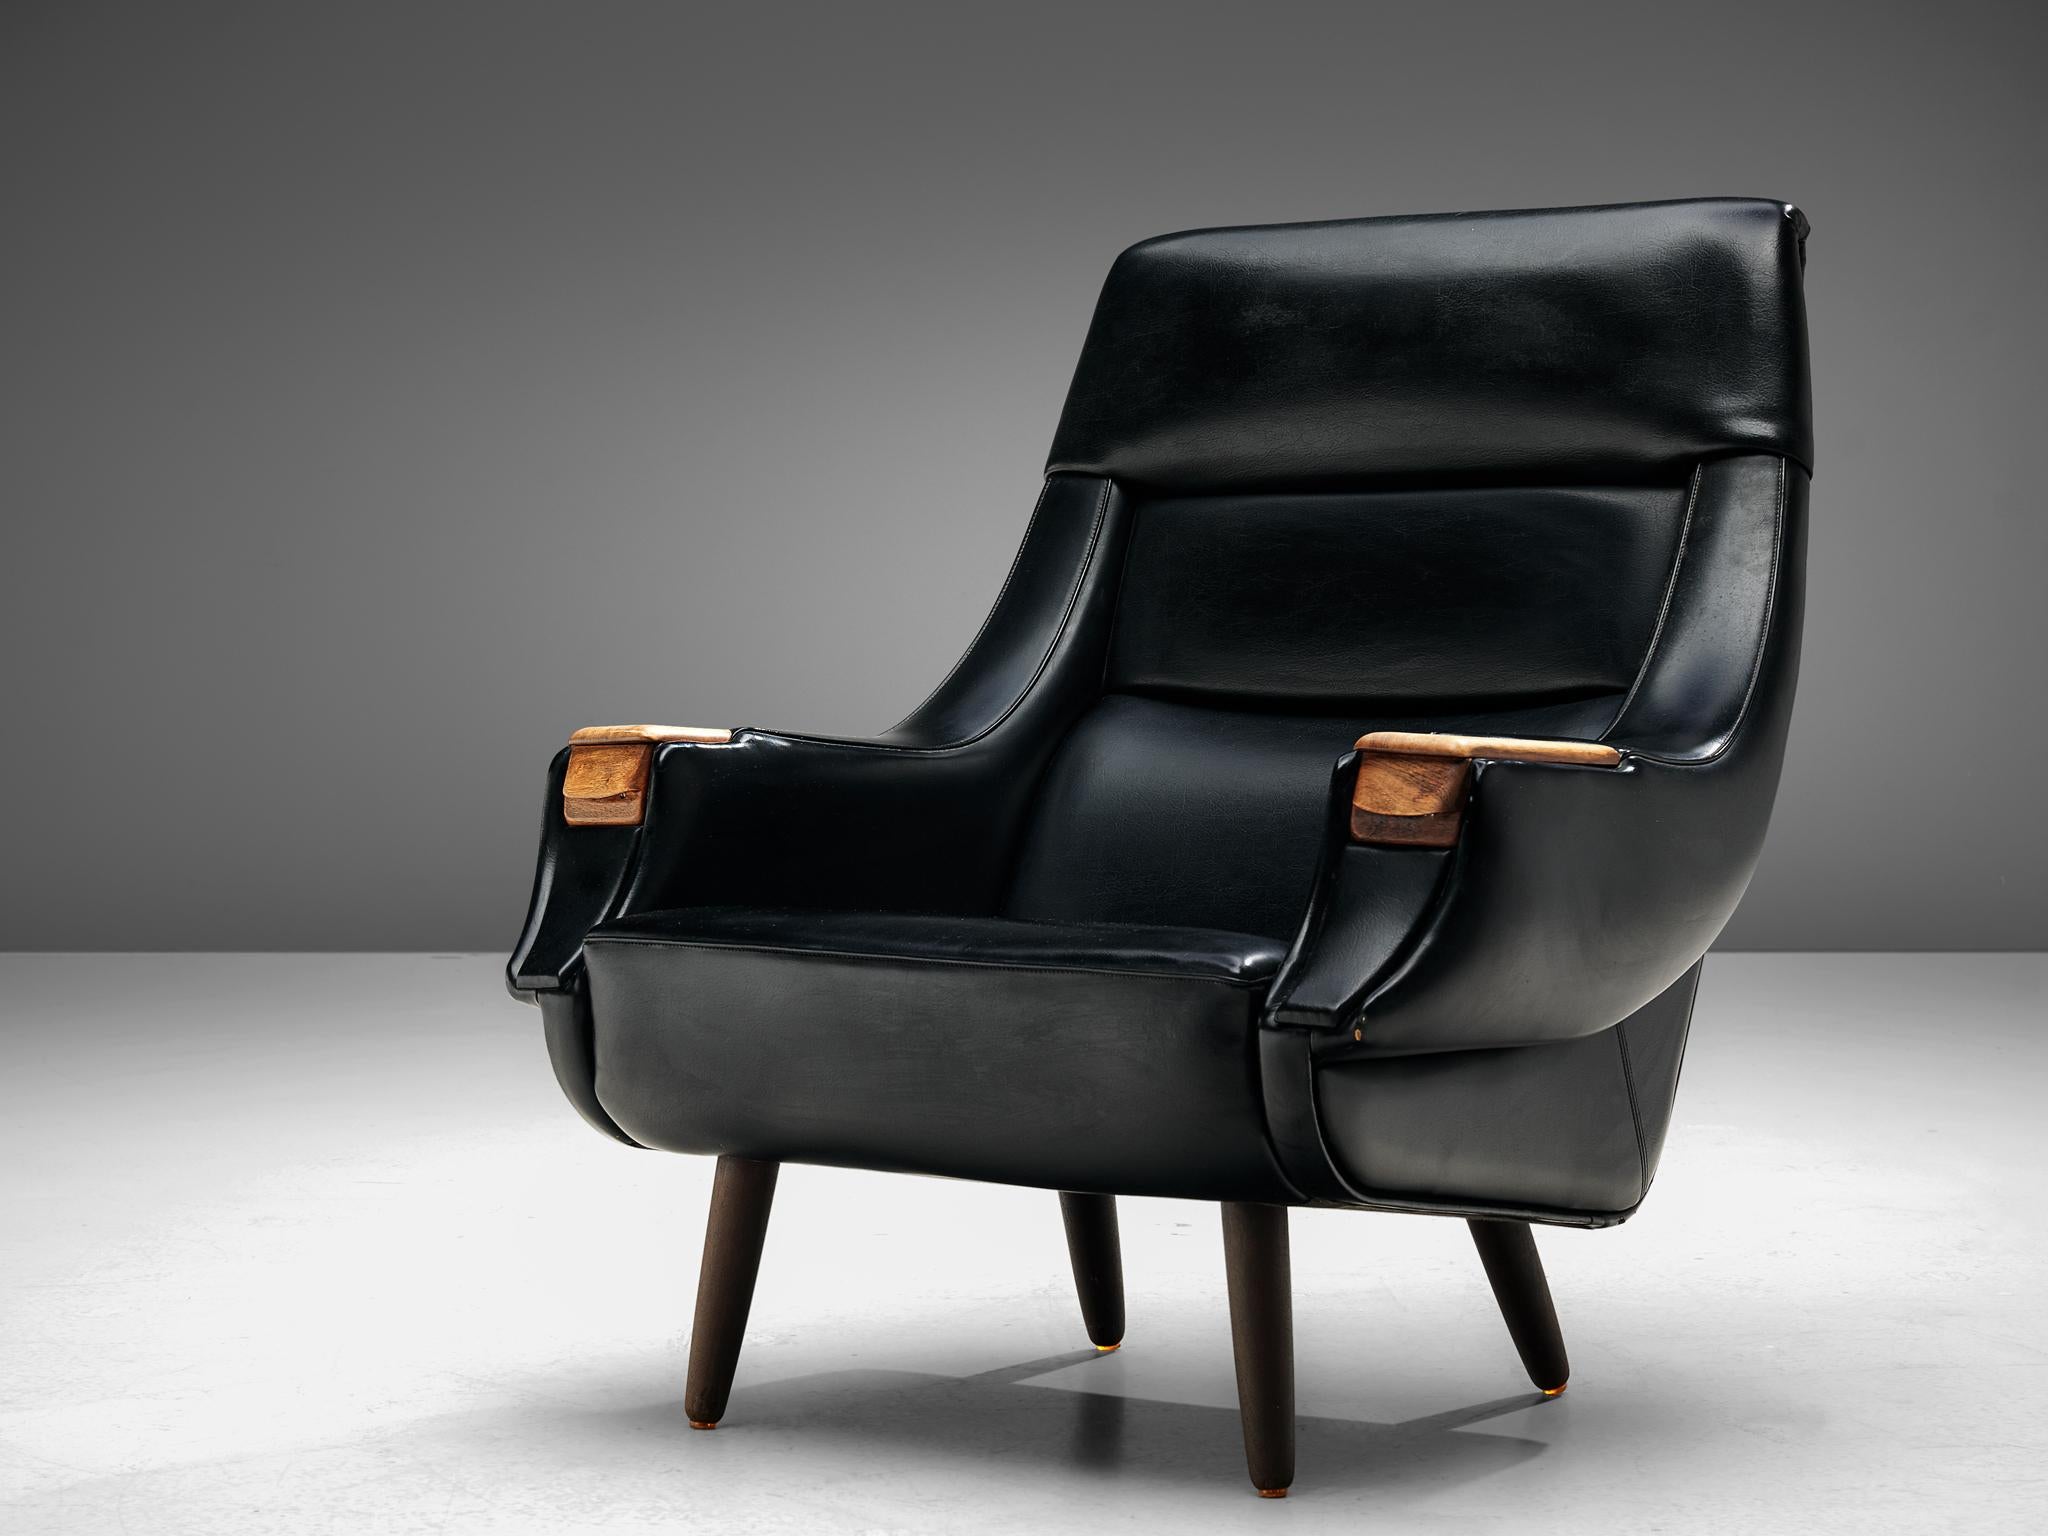 Henry Walter Klein pour HENRY, chaise longue, simili-cuir noir, bois, Danemark, années 1960.

Chaise longue robuste et confortable du designer danois H.W. Klein. La forme légèrement incurvée du dossier est très accueillante. La chaise a des pieds